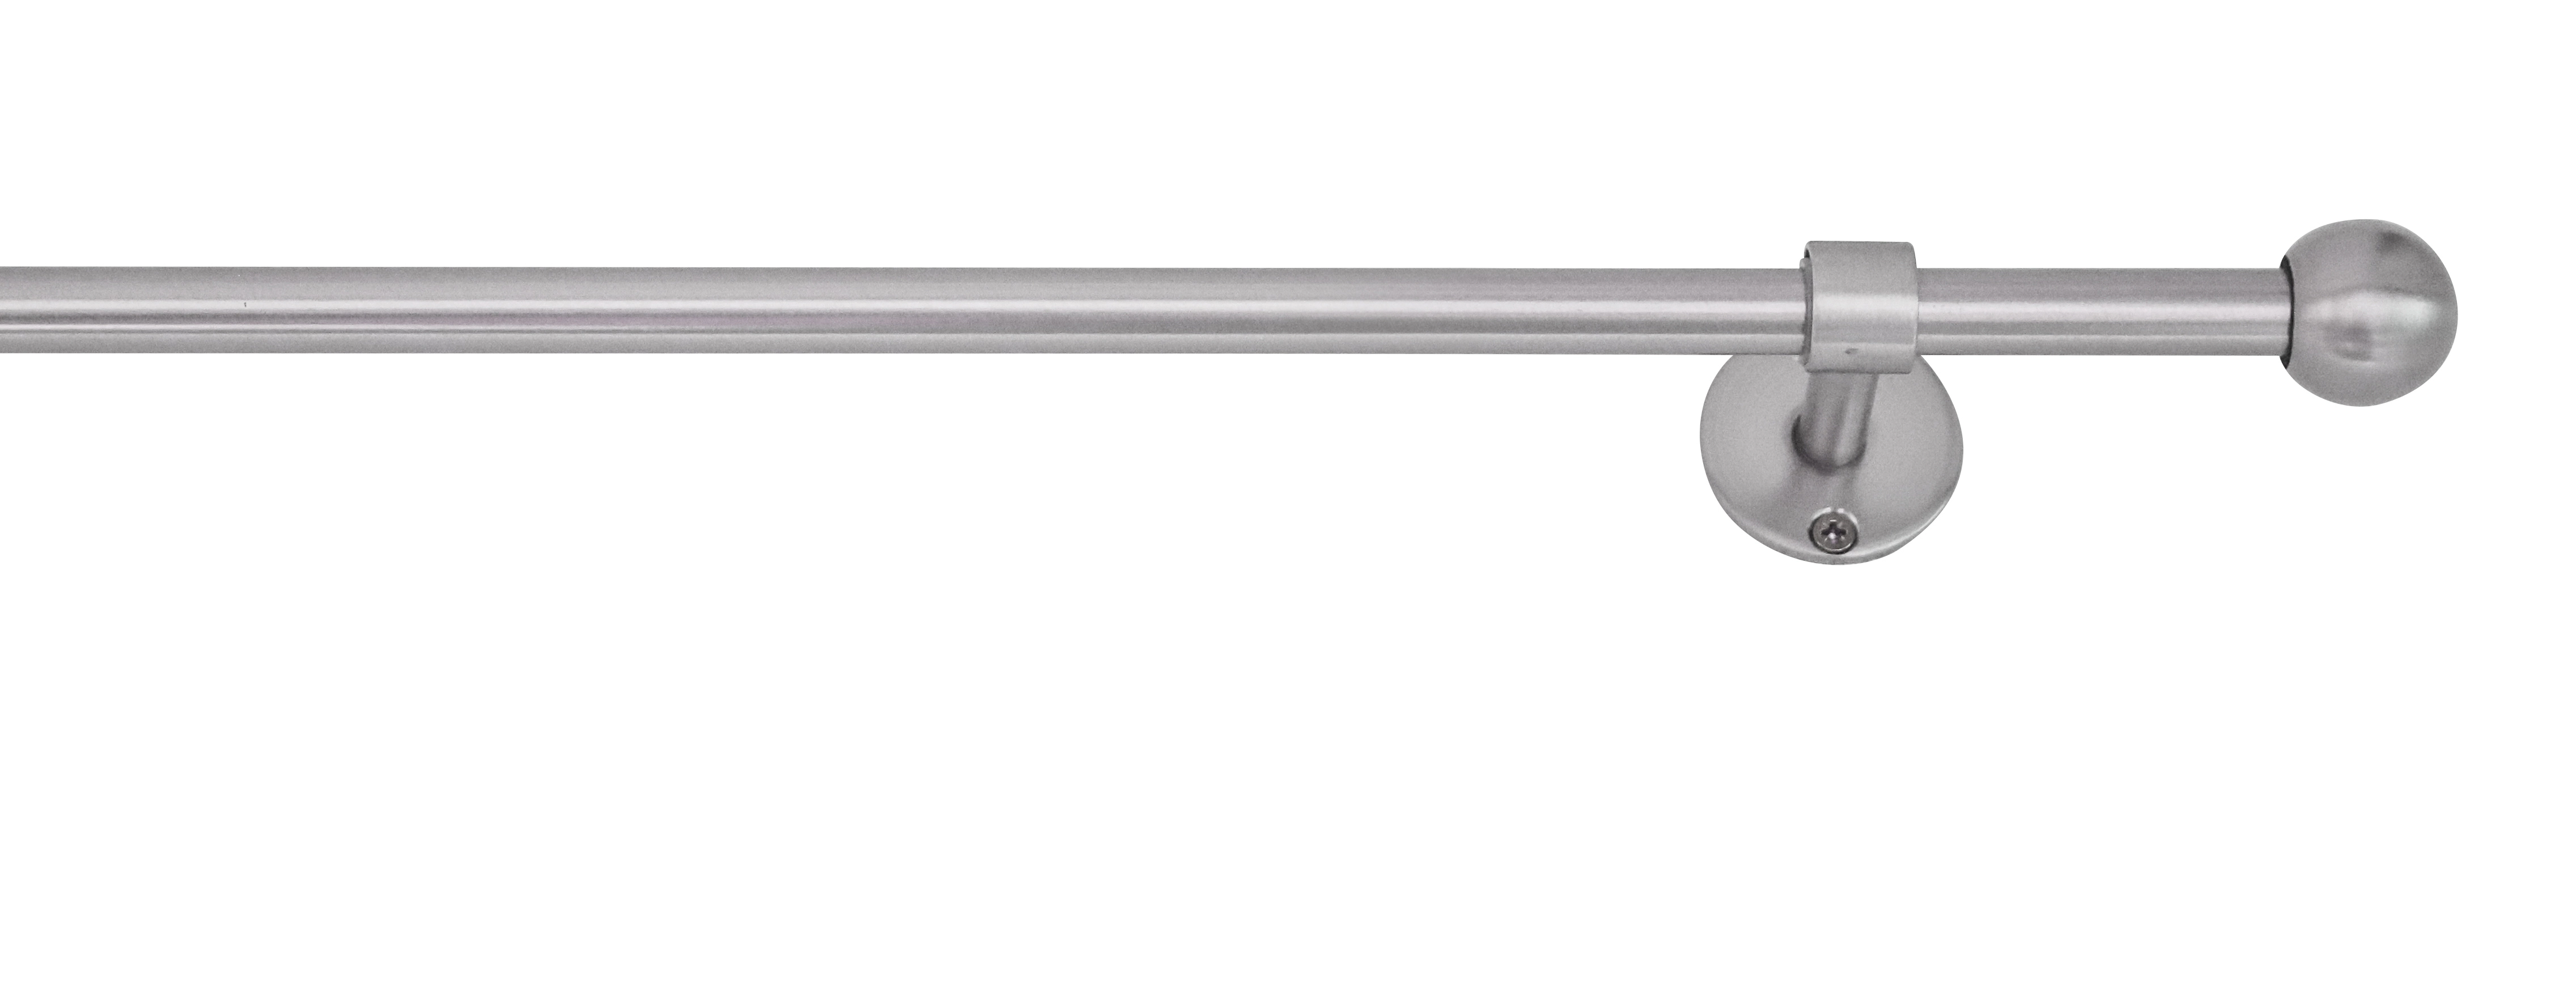 Edelstahl-Optik Gardinenstange-Komplettset ausziehbar kaufen bei 2in1 OBI mydeco 160-280cm